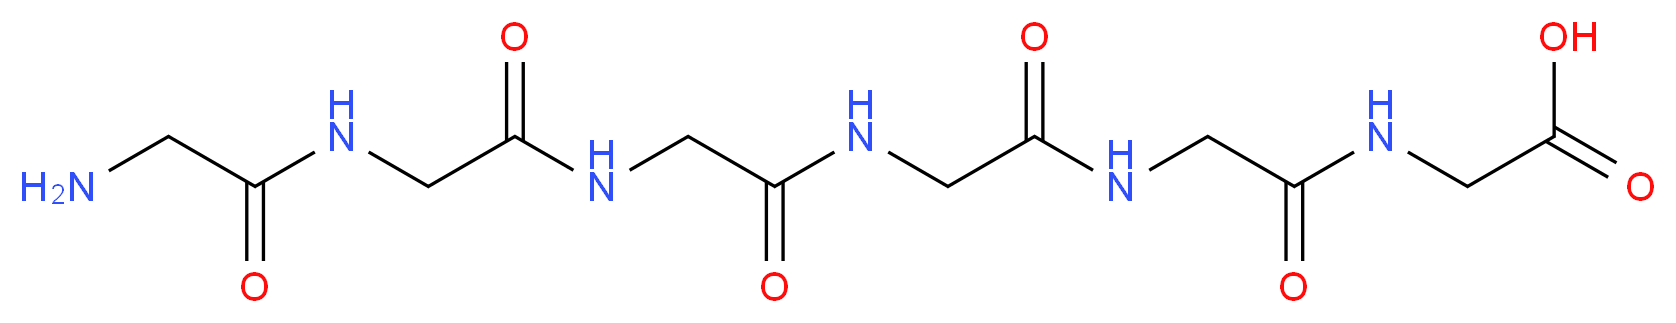 3887-13-6 molecular structure